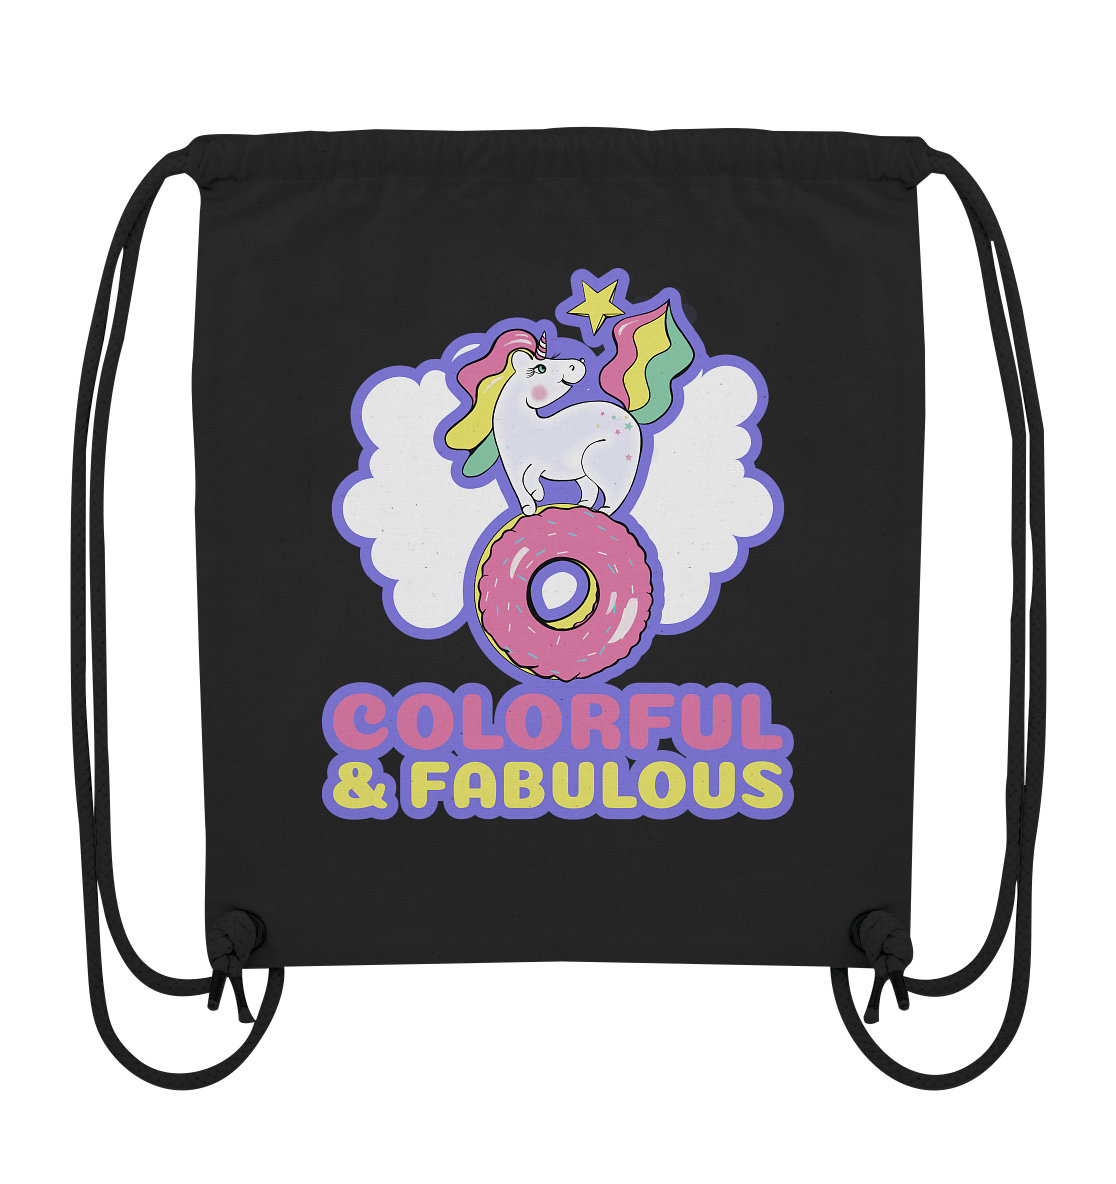 Einhorn Rucksack Gym-Bag in schwarz mit bunten Einhorn Colorful & Fabulous Print BLOOMINIC